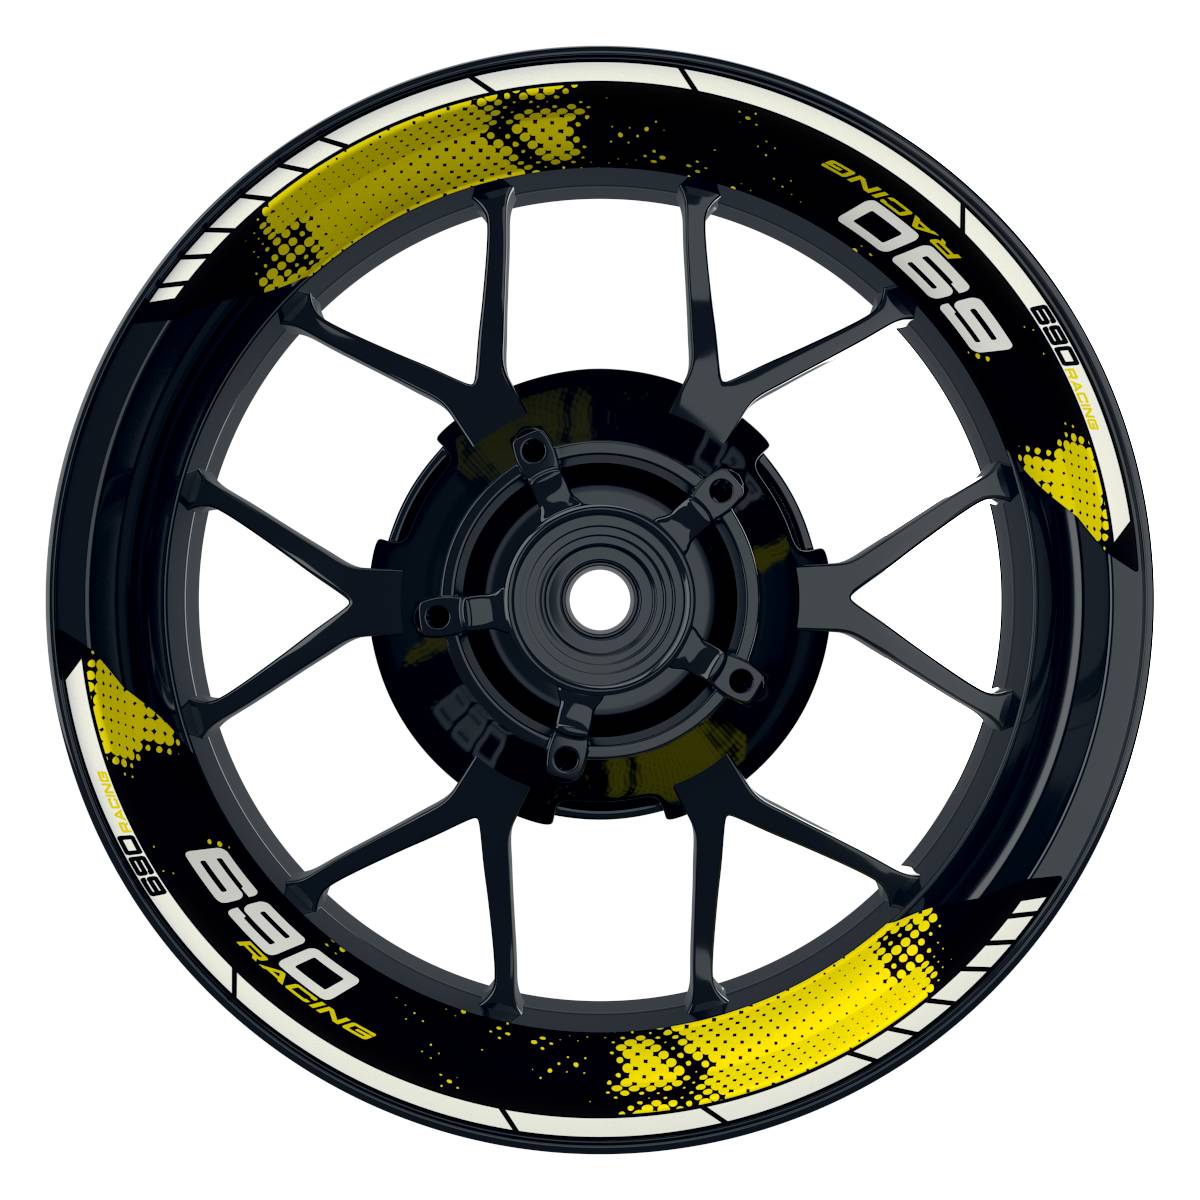 KTM Racing 690 Dots schwarz gelb Frontansicht